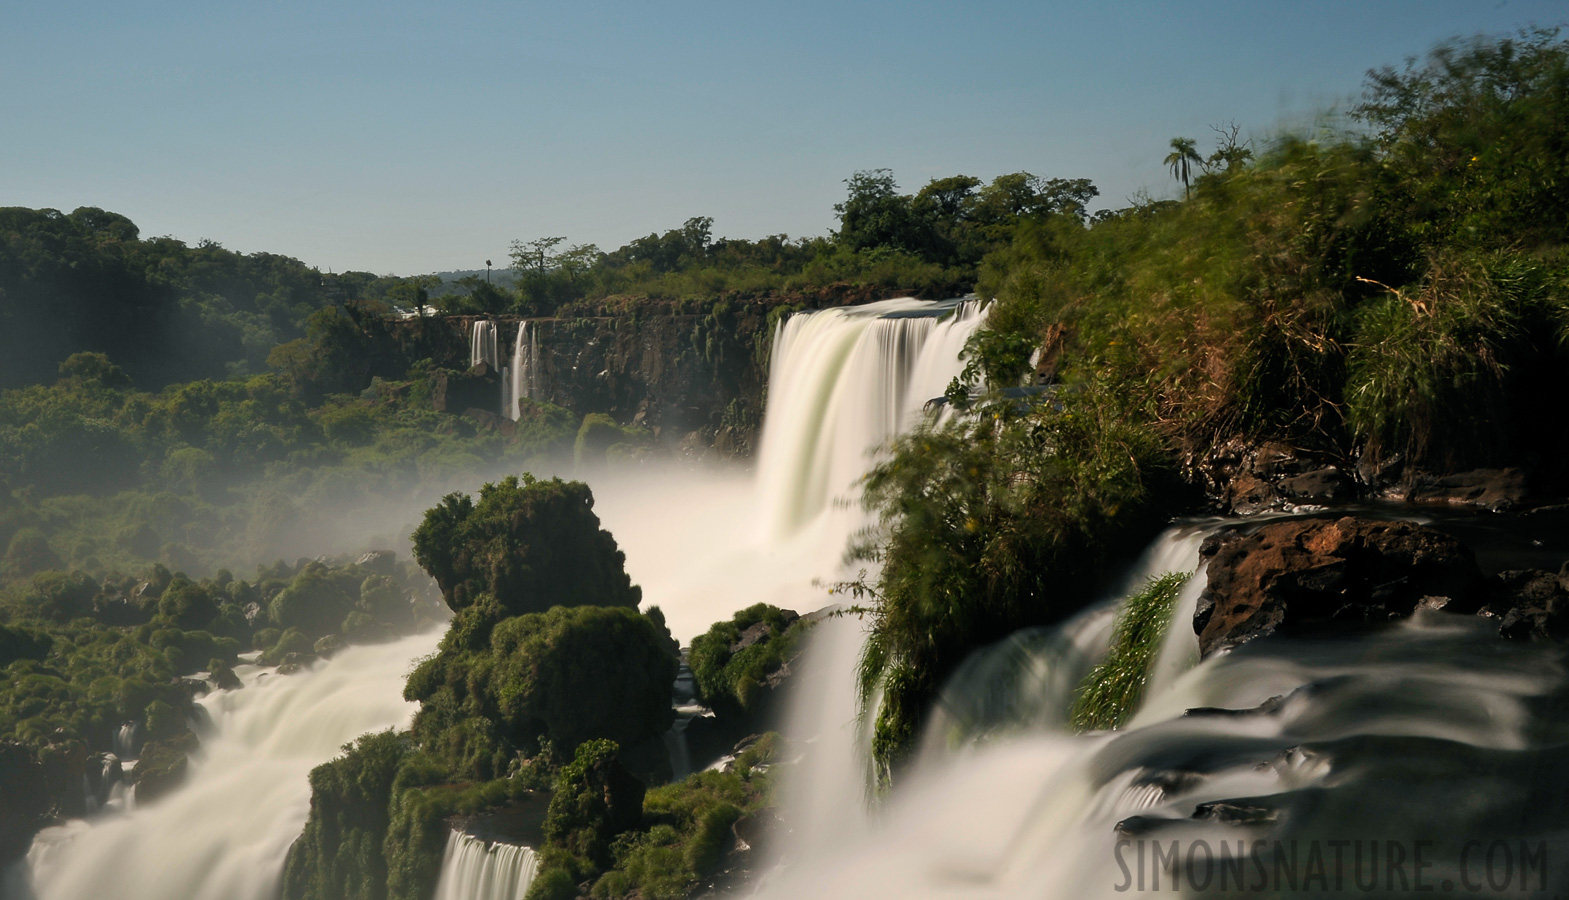 Cataratas del Iguazu [36 mm, 10.0 sec at f / 22, ISO 200]